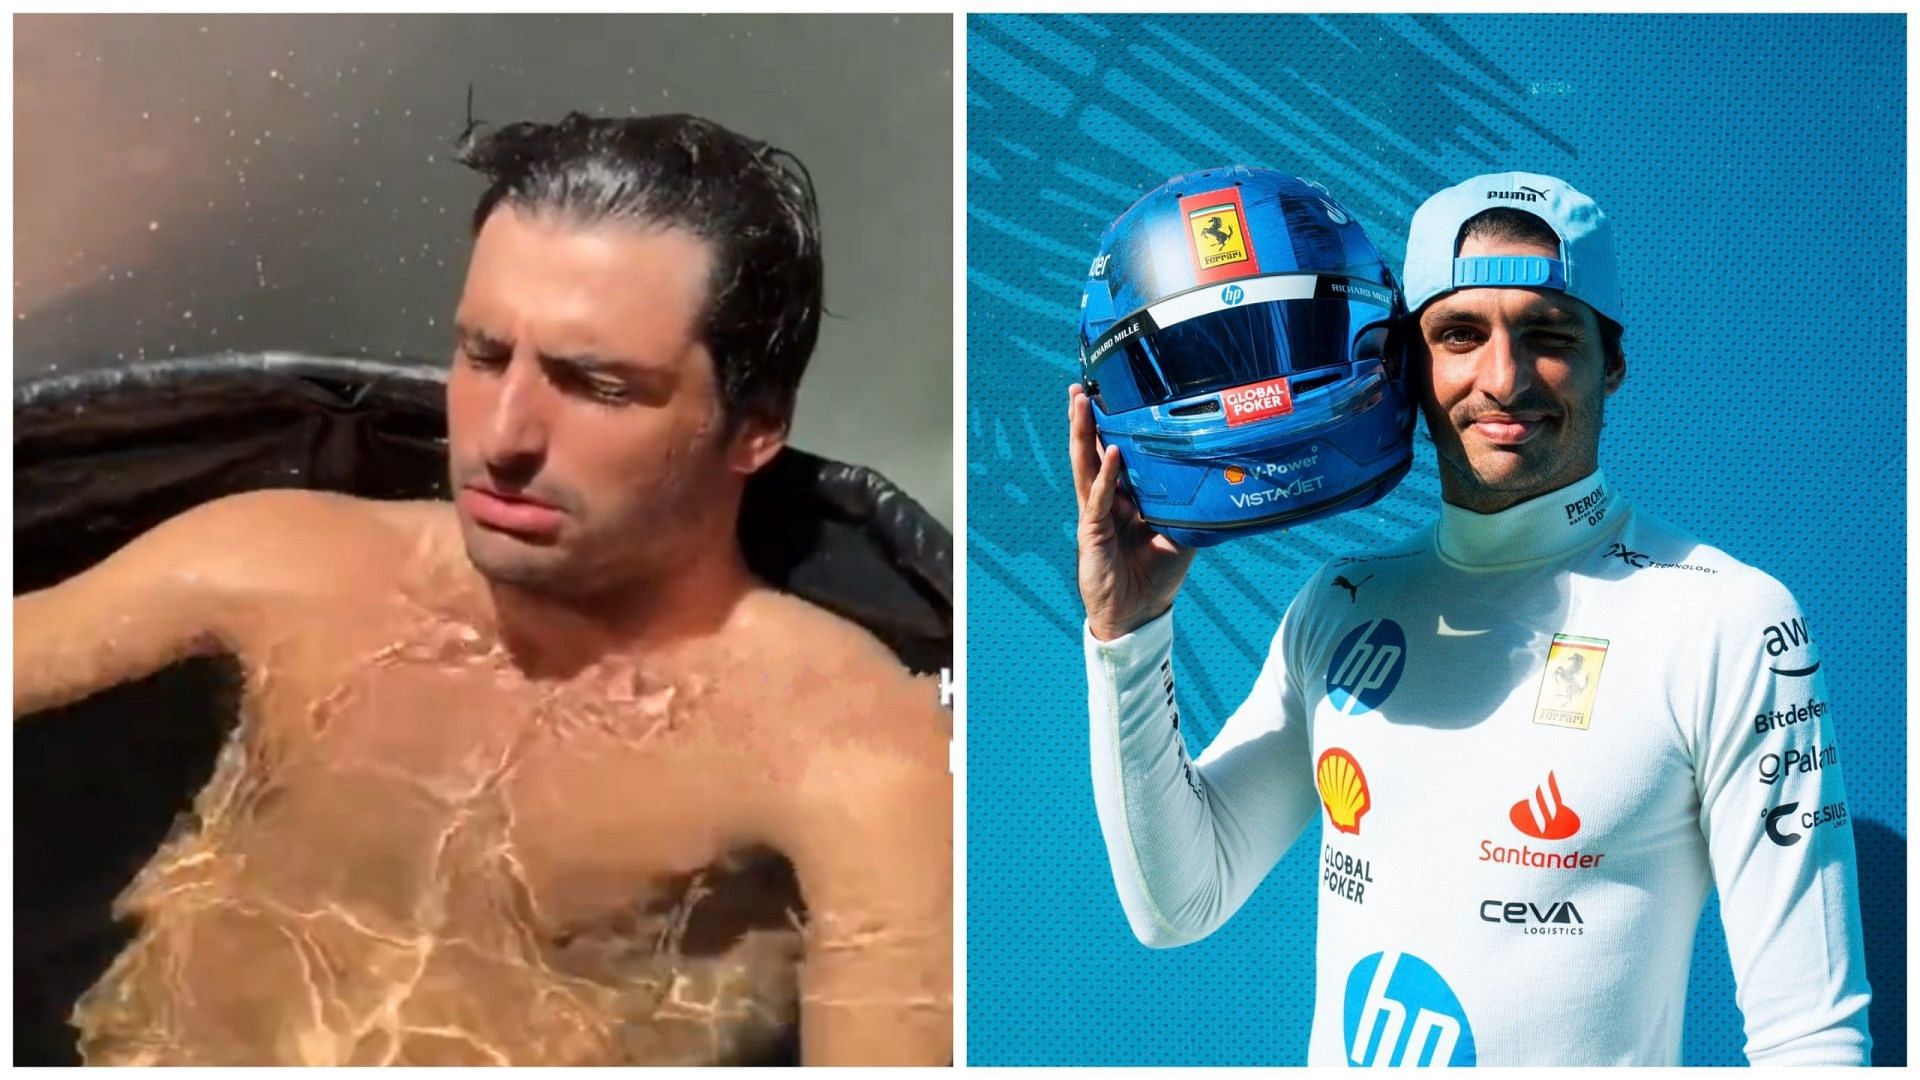 Watch as Ferrari driver Carlos Sainz shivers while taking an ice bath in Miami